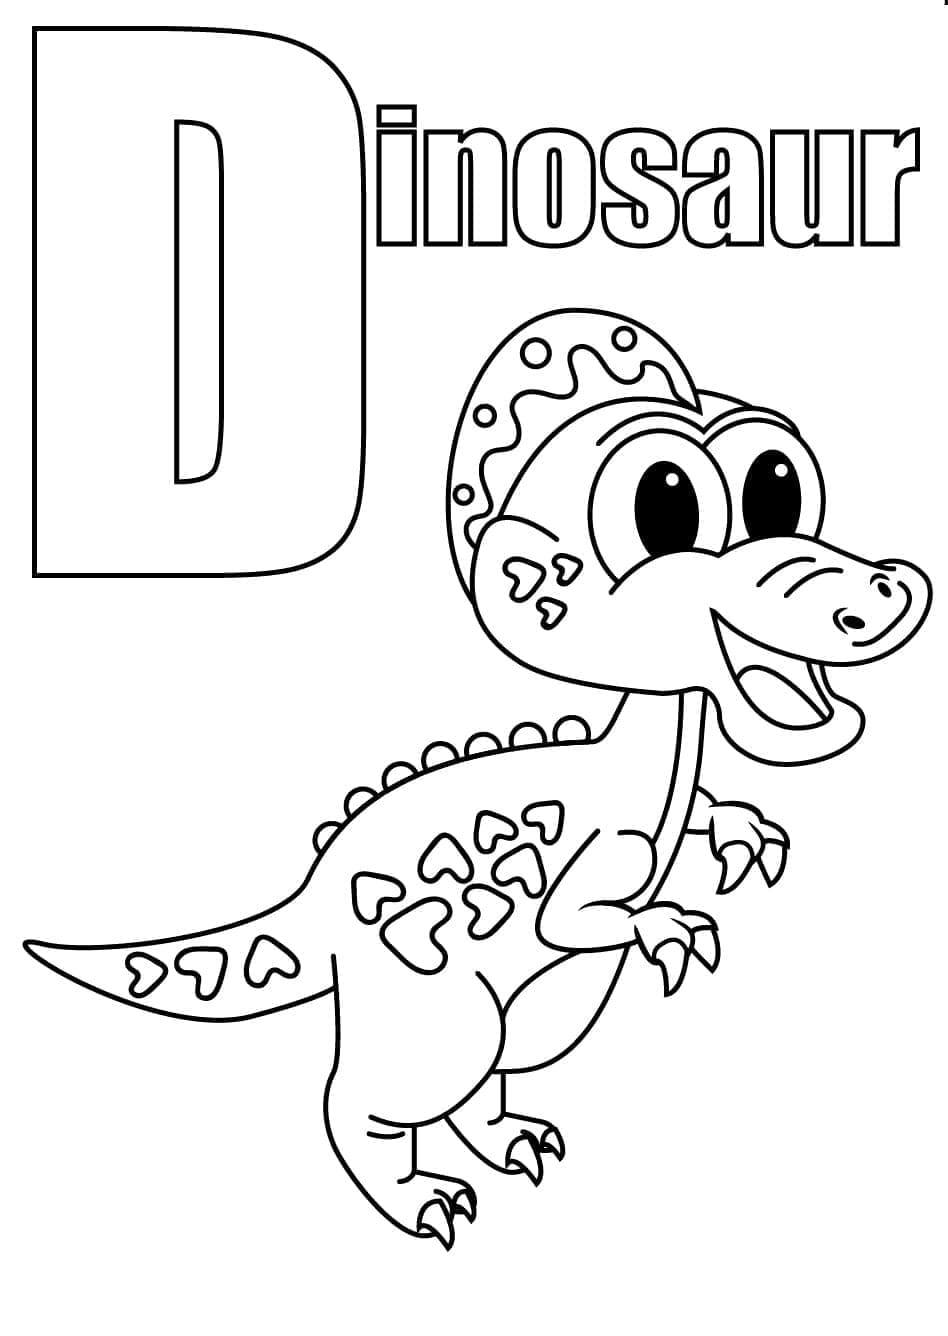 Lettre D et Dinosaure coloring page